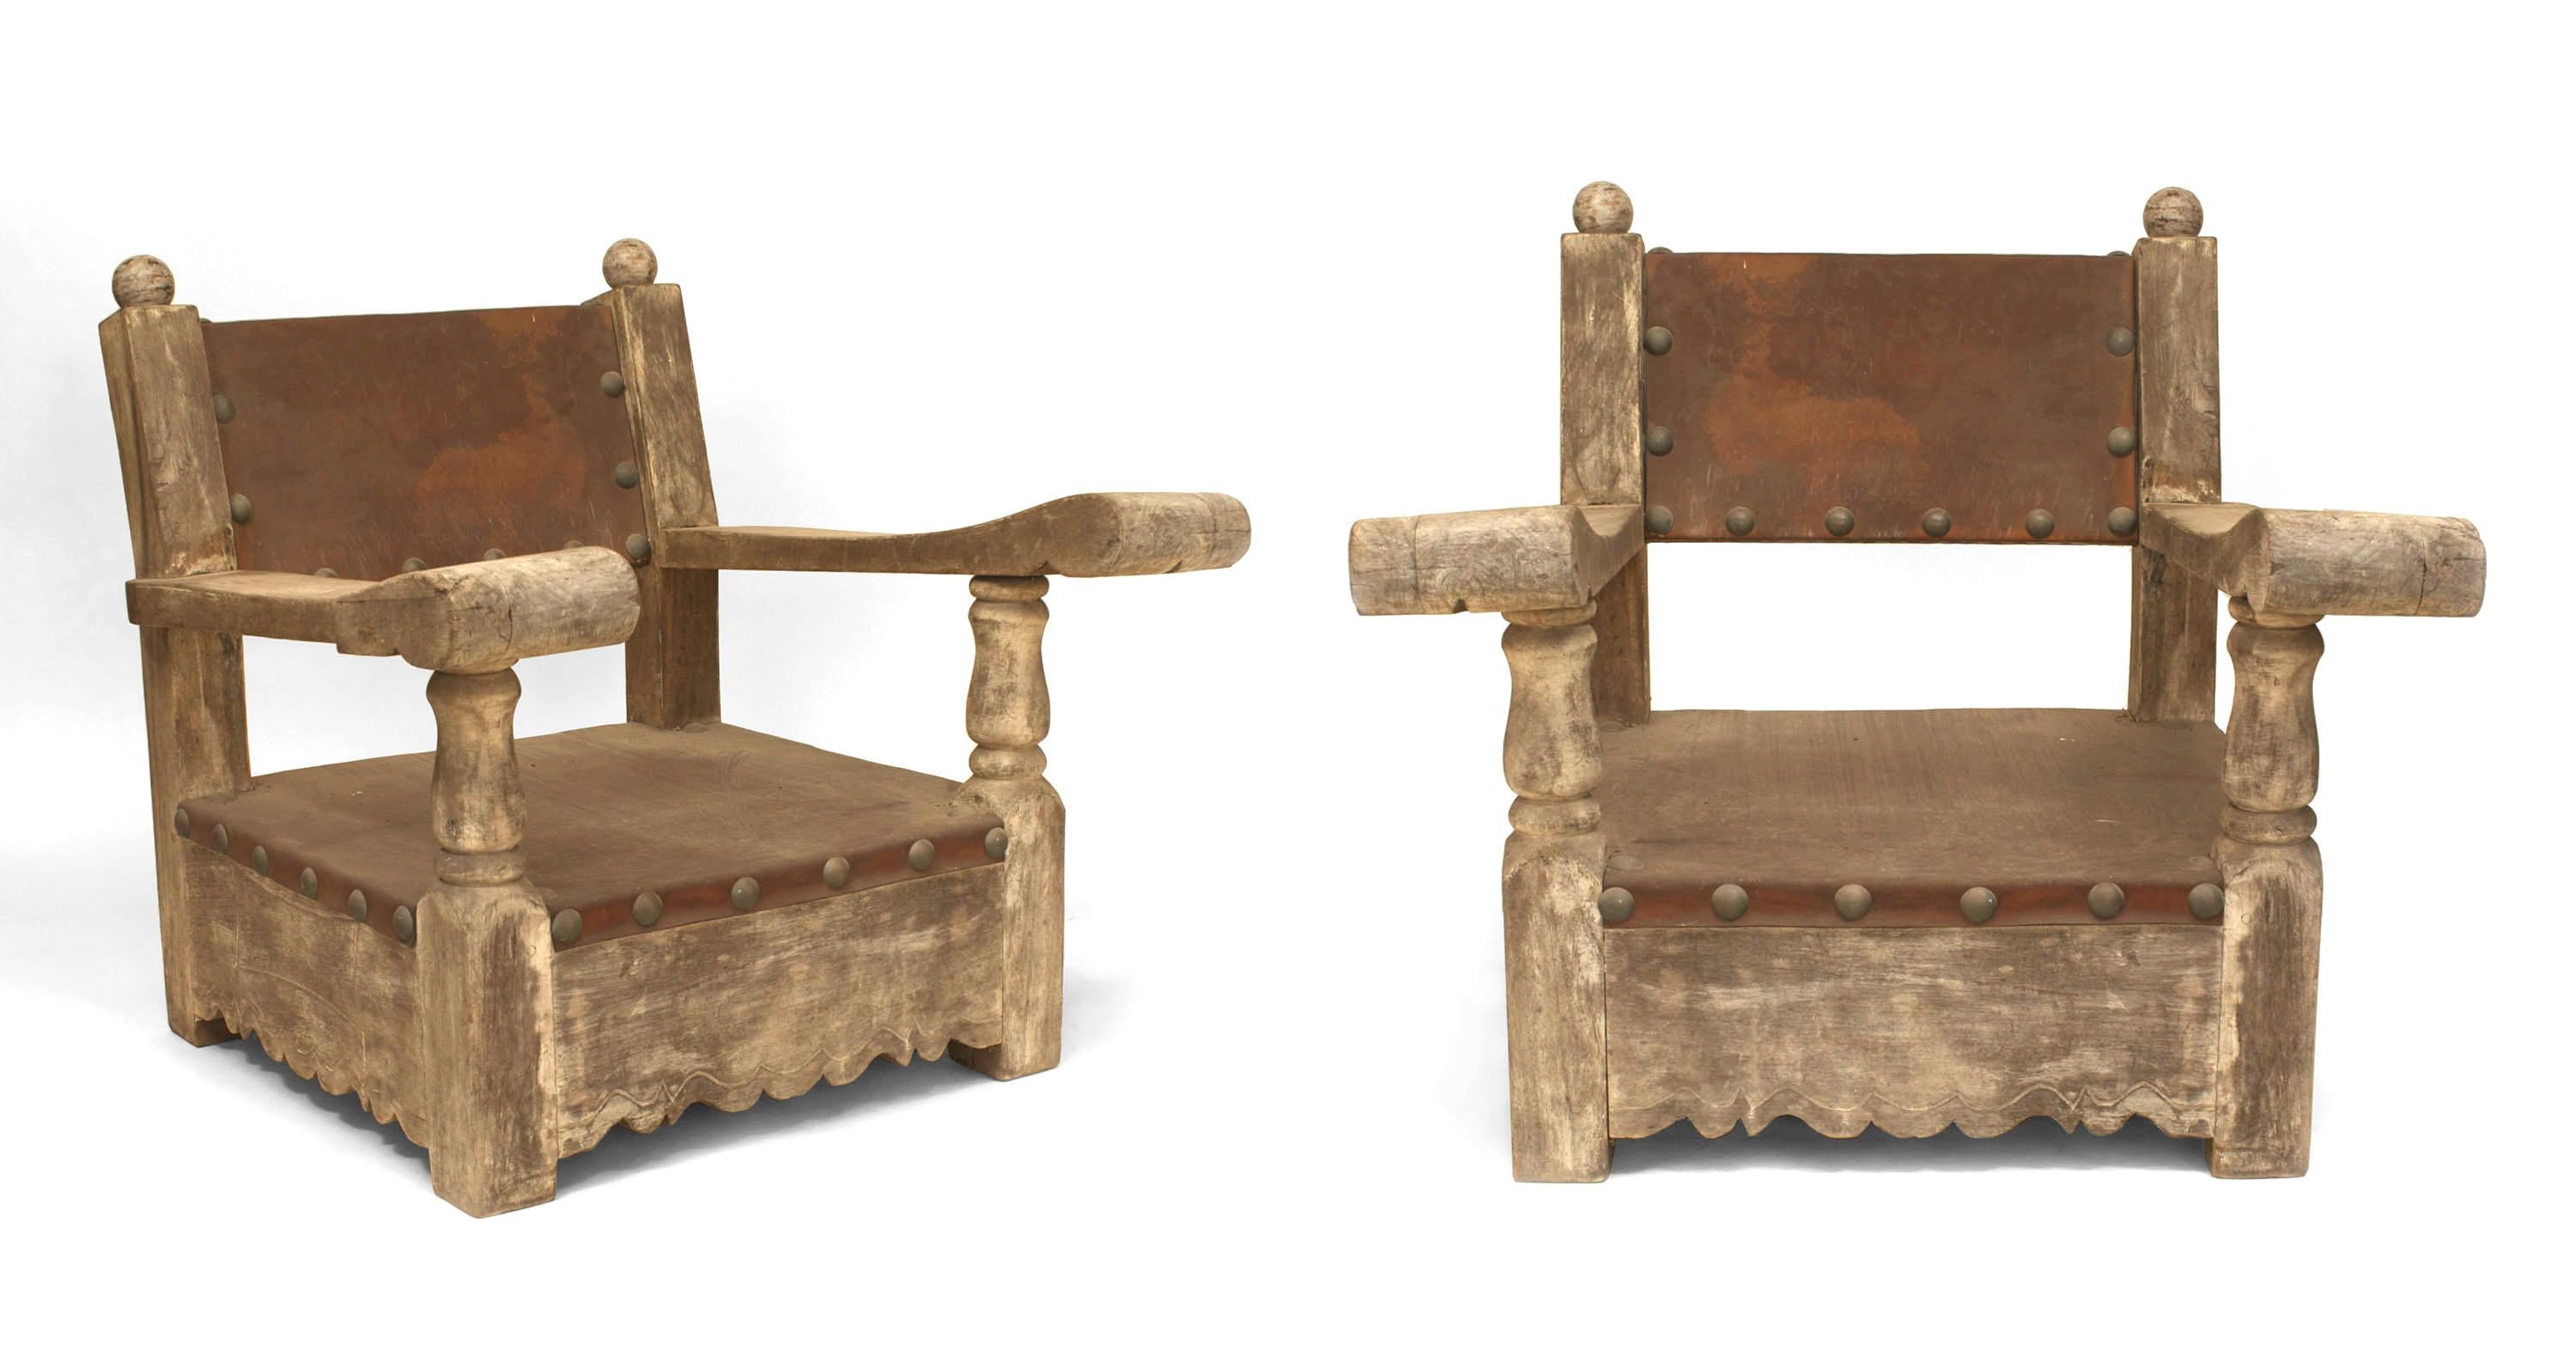 Paire de fauteuils rustiques (probablement du Mexique des années 1920) en chêne et pin patinés par le temps, avec assise et dossier en cuir brun et garniture de têtes de clous.
